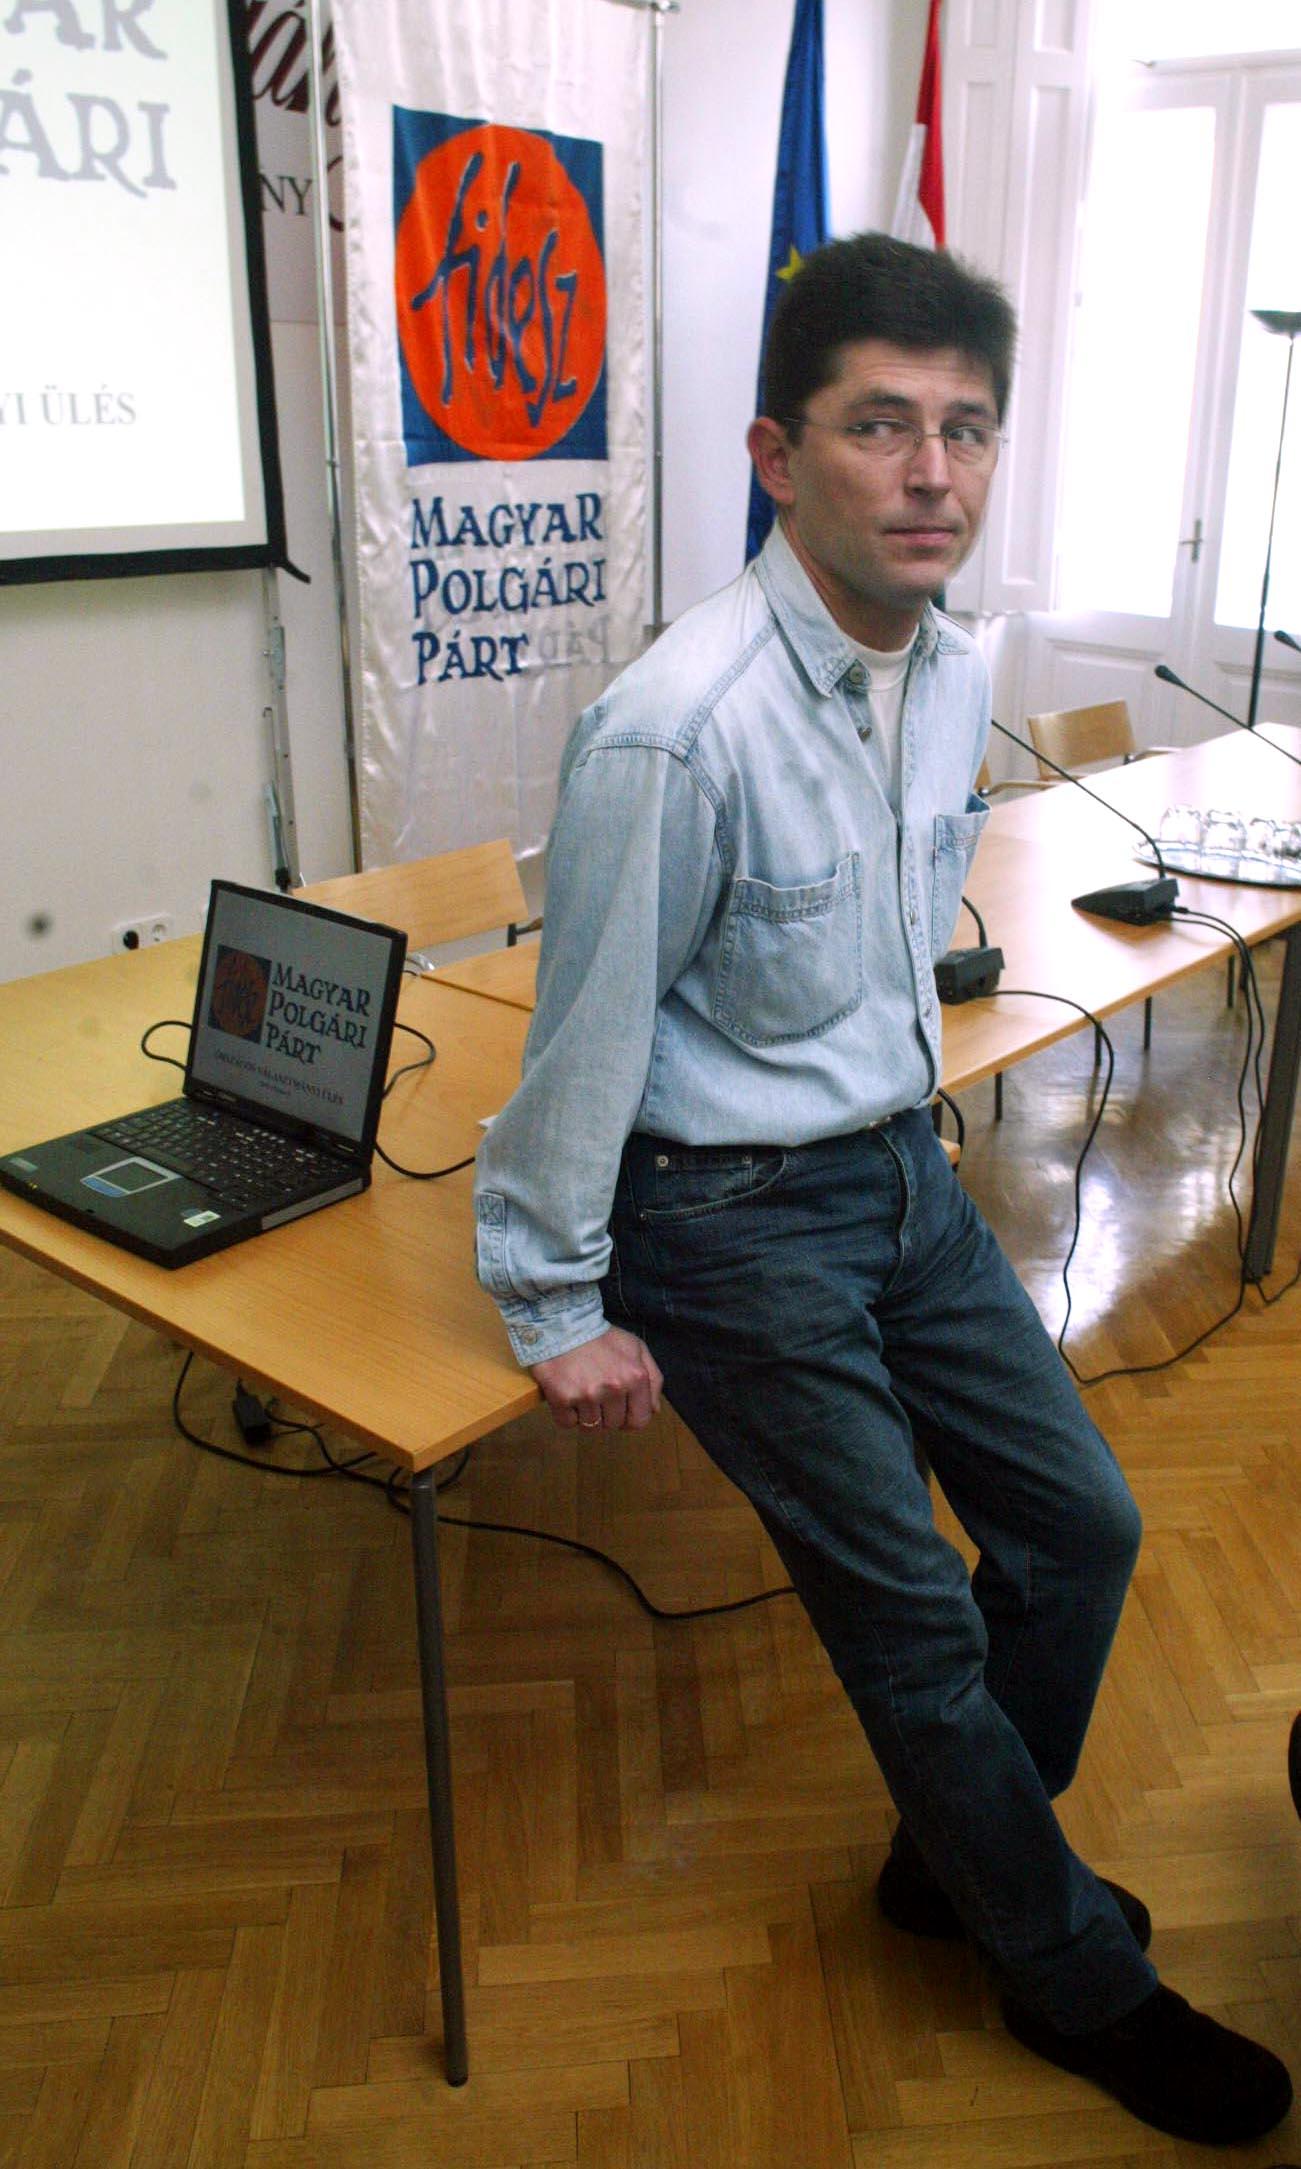 Várhwegyi 2003-ban. Hűtlen kezelés miatt elítélték, de csak 2006ban szállt ki a politikából